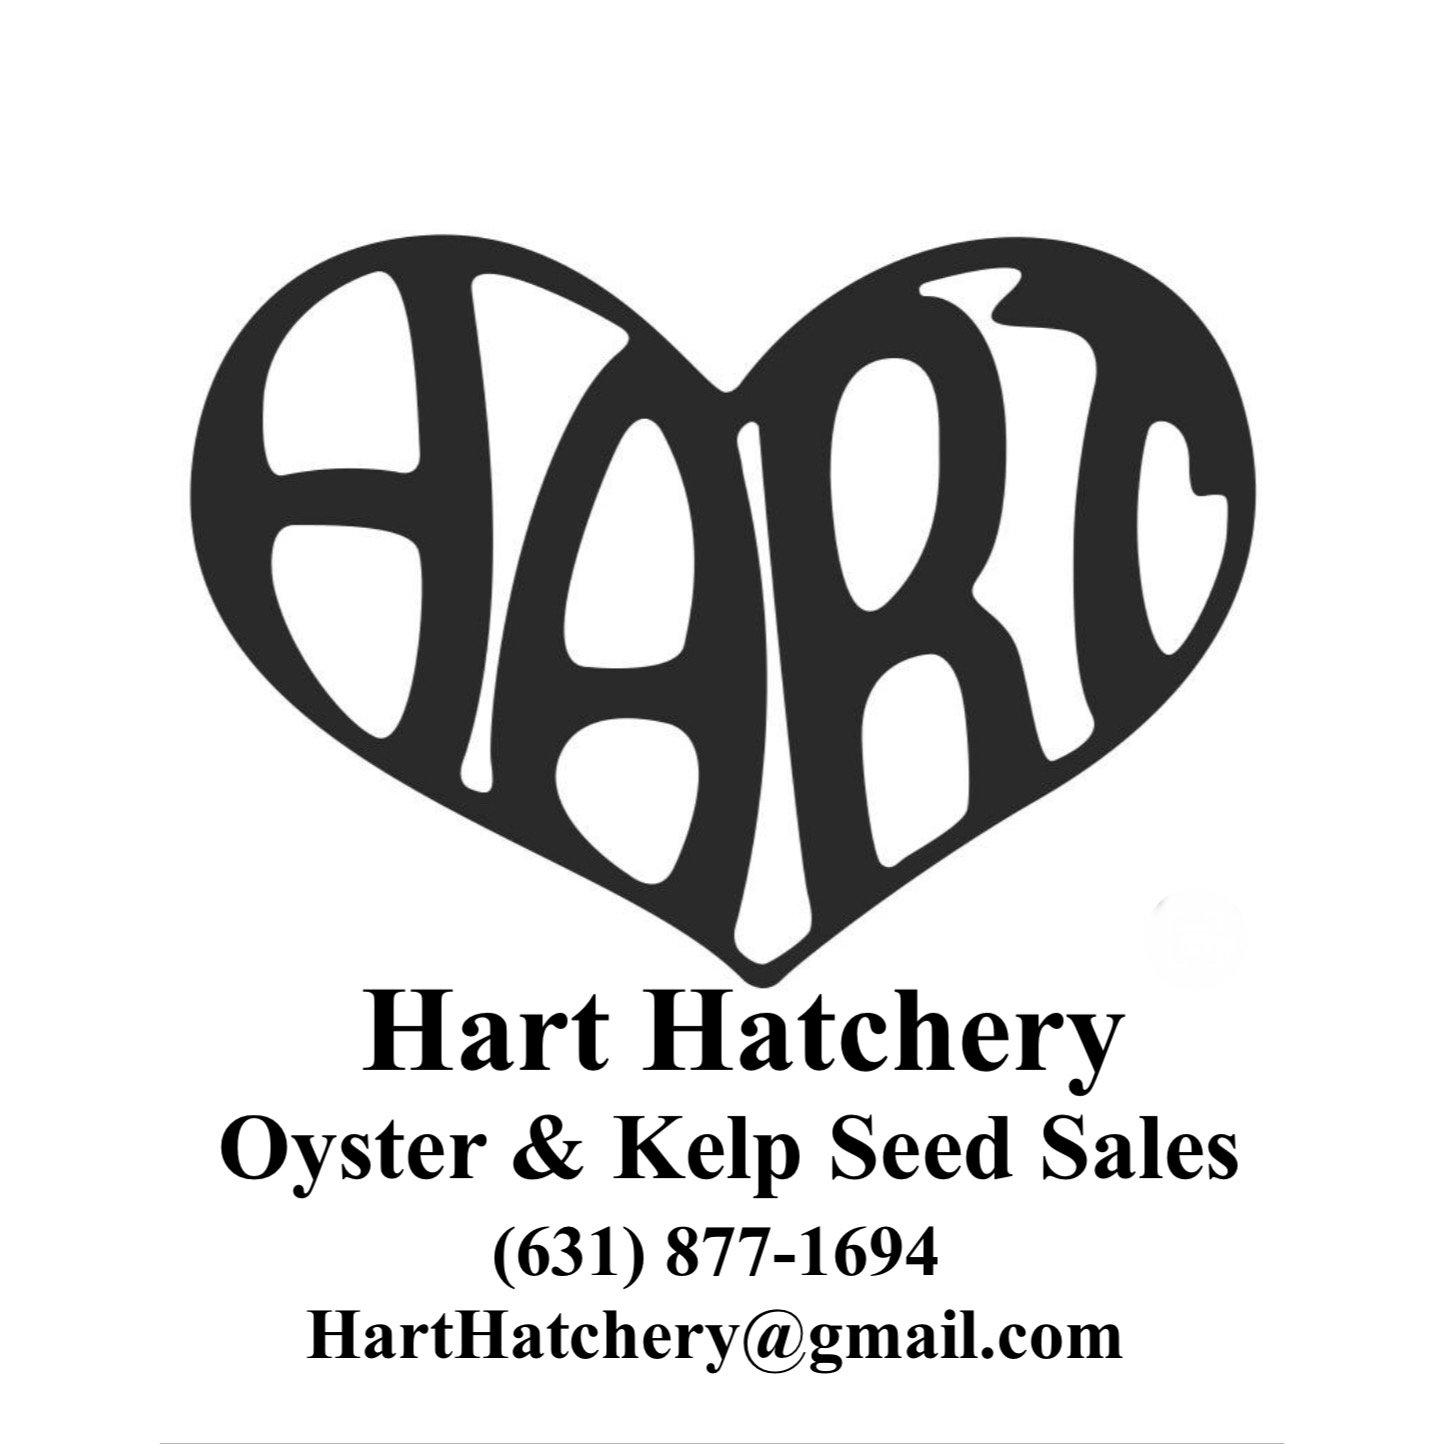 Hart Hatchery